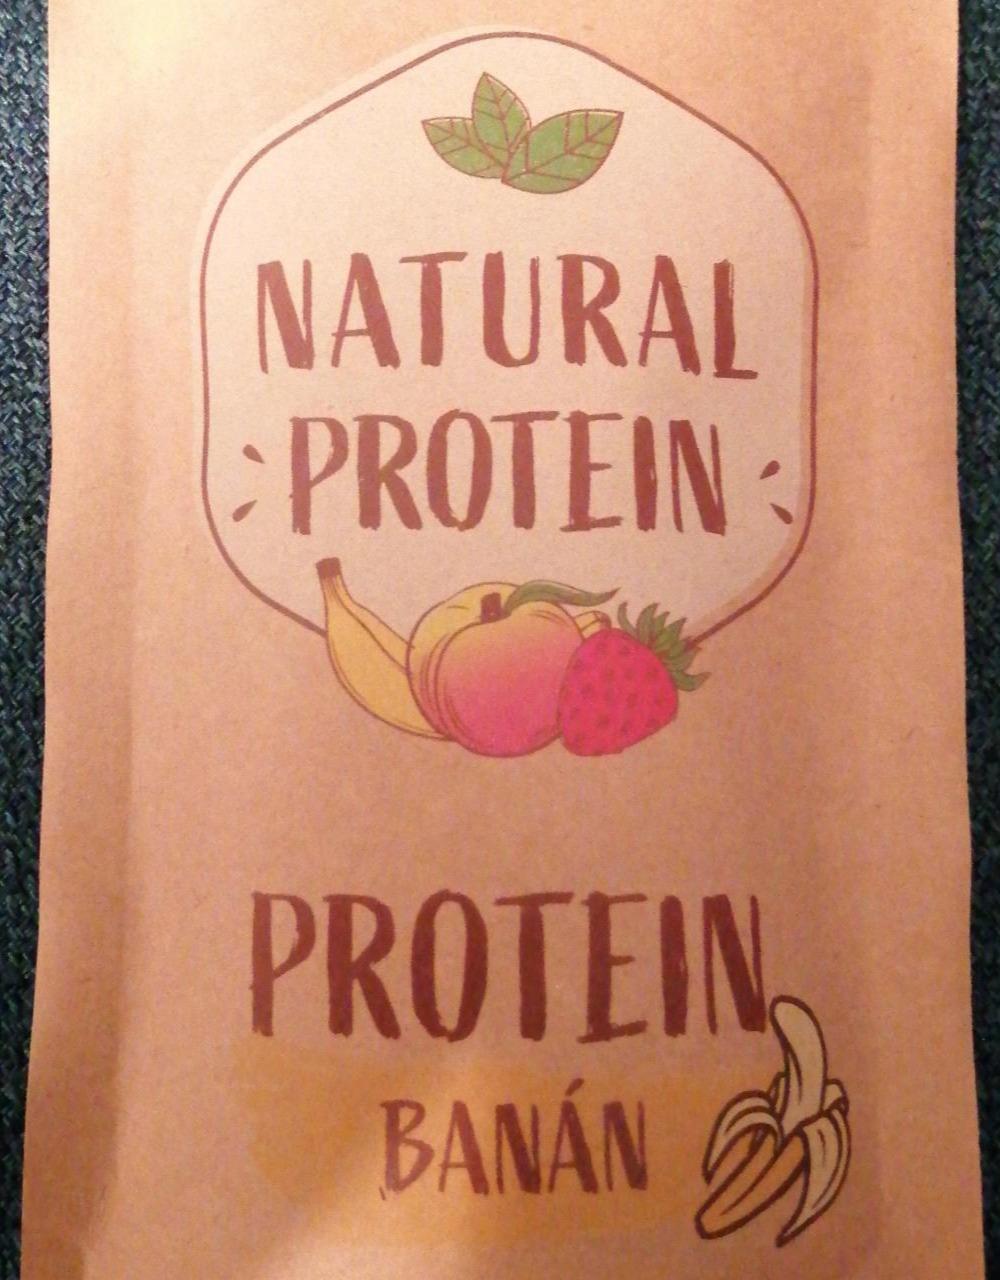 Fotografie - Protein banán Natural Protein